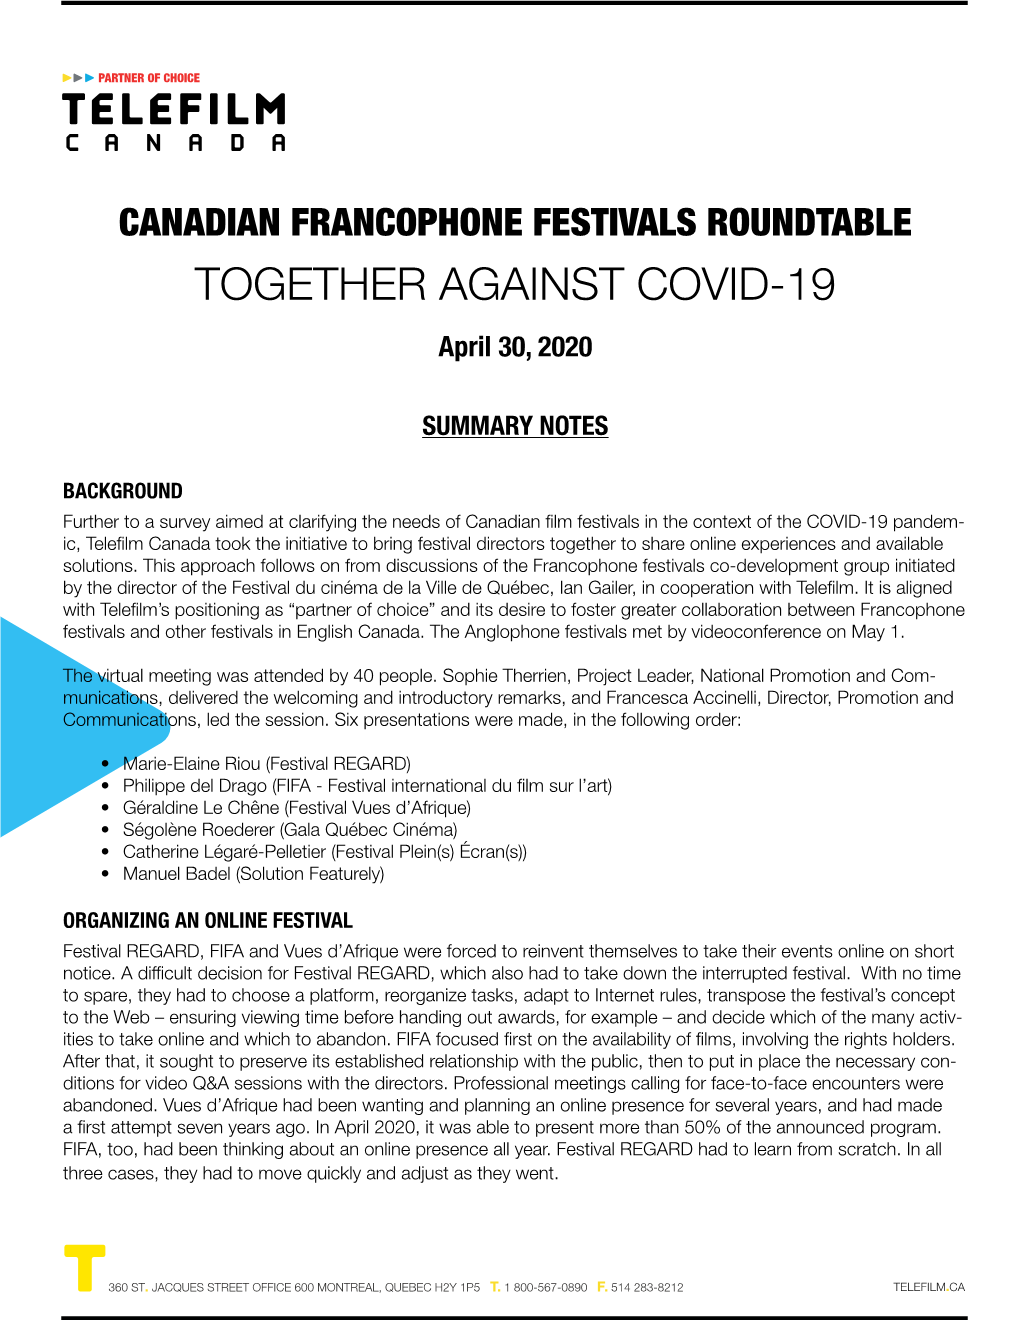 CANADIAN FRANCOPHONE FESTIVALS ROUNDTABLE TOGETHER AGAINST COVID-19 April 30, 2020